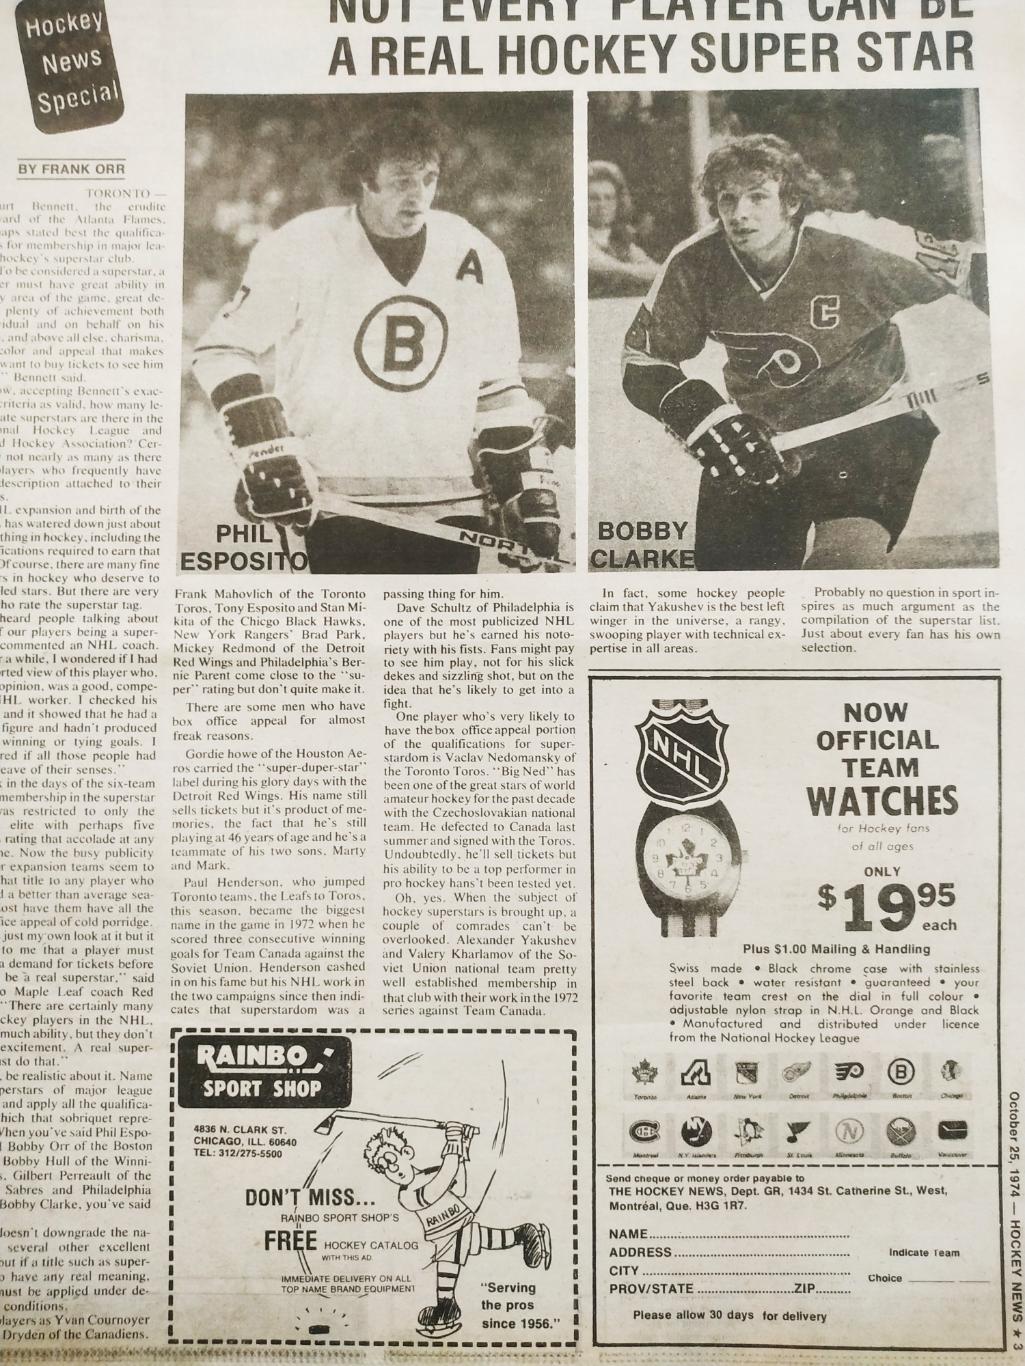 ХОККЕЙ ЖУРНАЛ ЕЖЕНЕДЕЛЬНИК НХЛ НОВОСТИ ХОККЕЯ OCT.25 1974 NHL THE HOCKEY NEWS 2